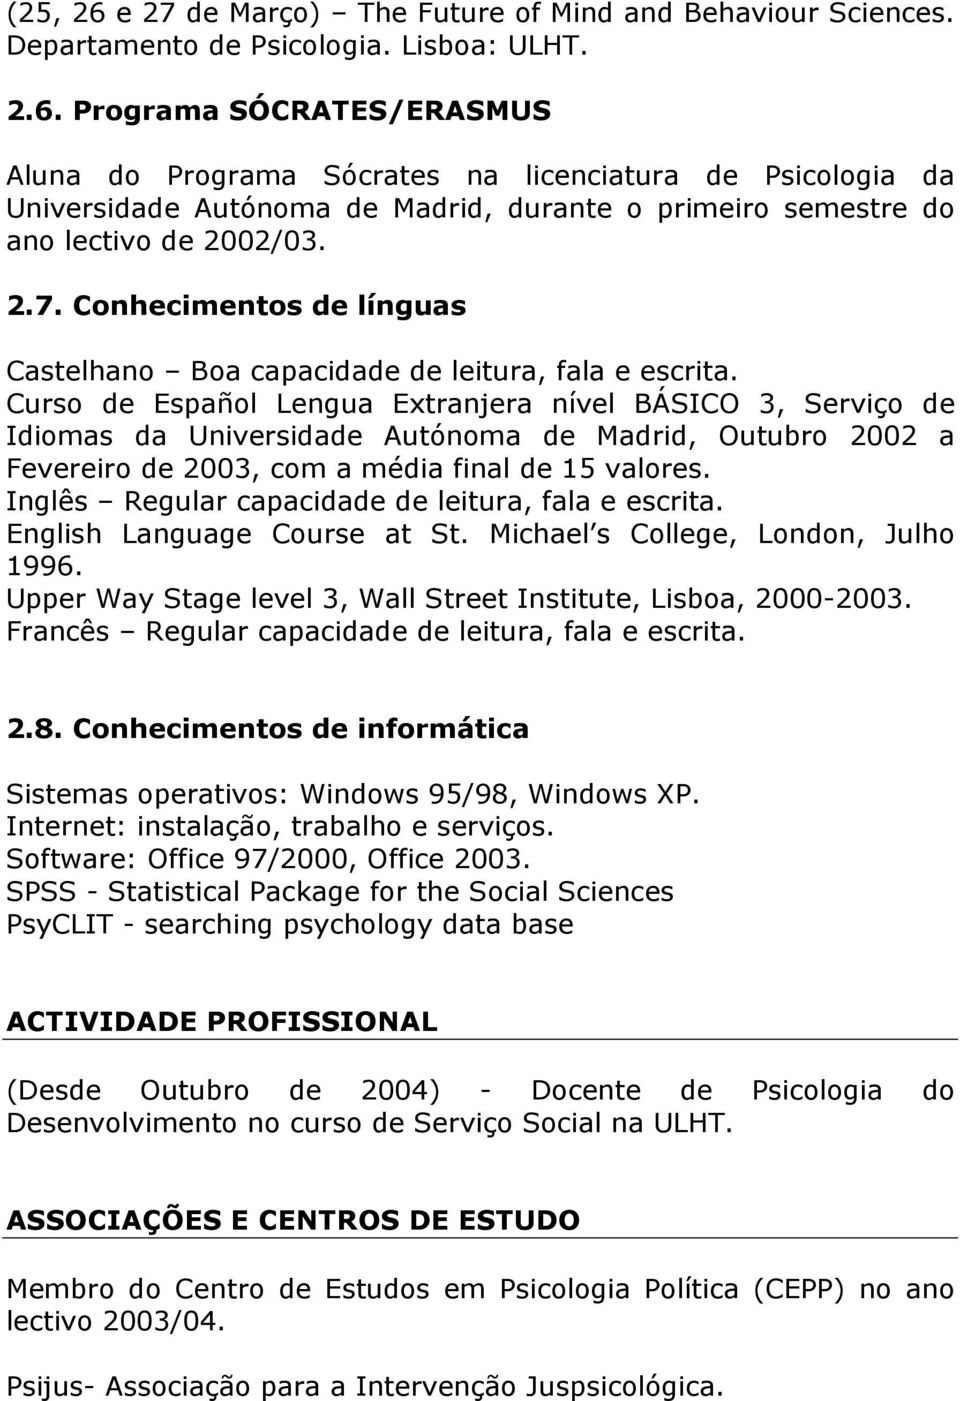 Curso de Español Lengua Extranjera nível BÁSICO 3, Serviço de Idiomas da Universidade Autónoma de Madrid, Outubro 2002 a Fevereiro de 2003, com a média final de 15 valores.